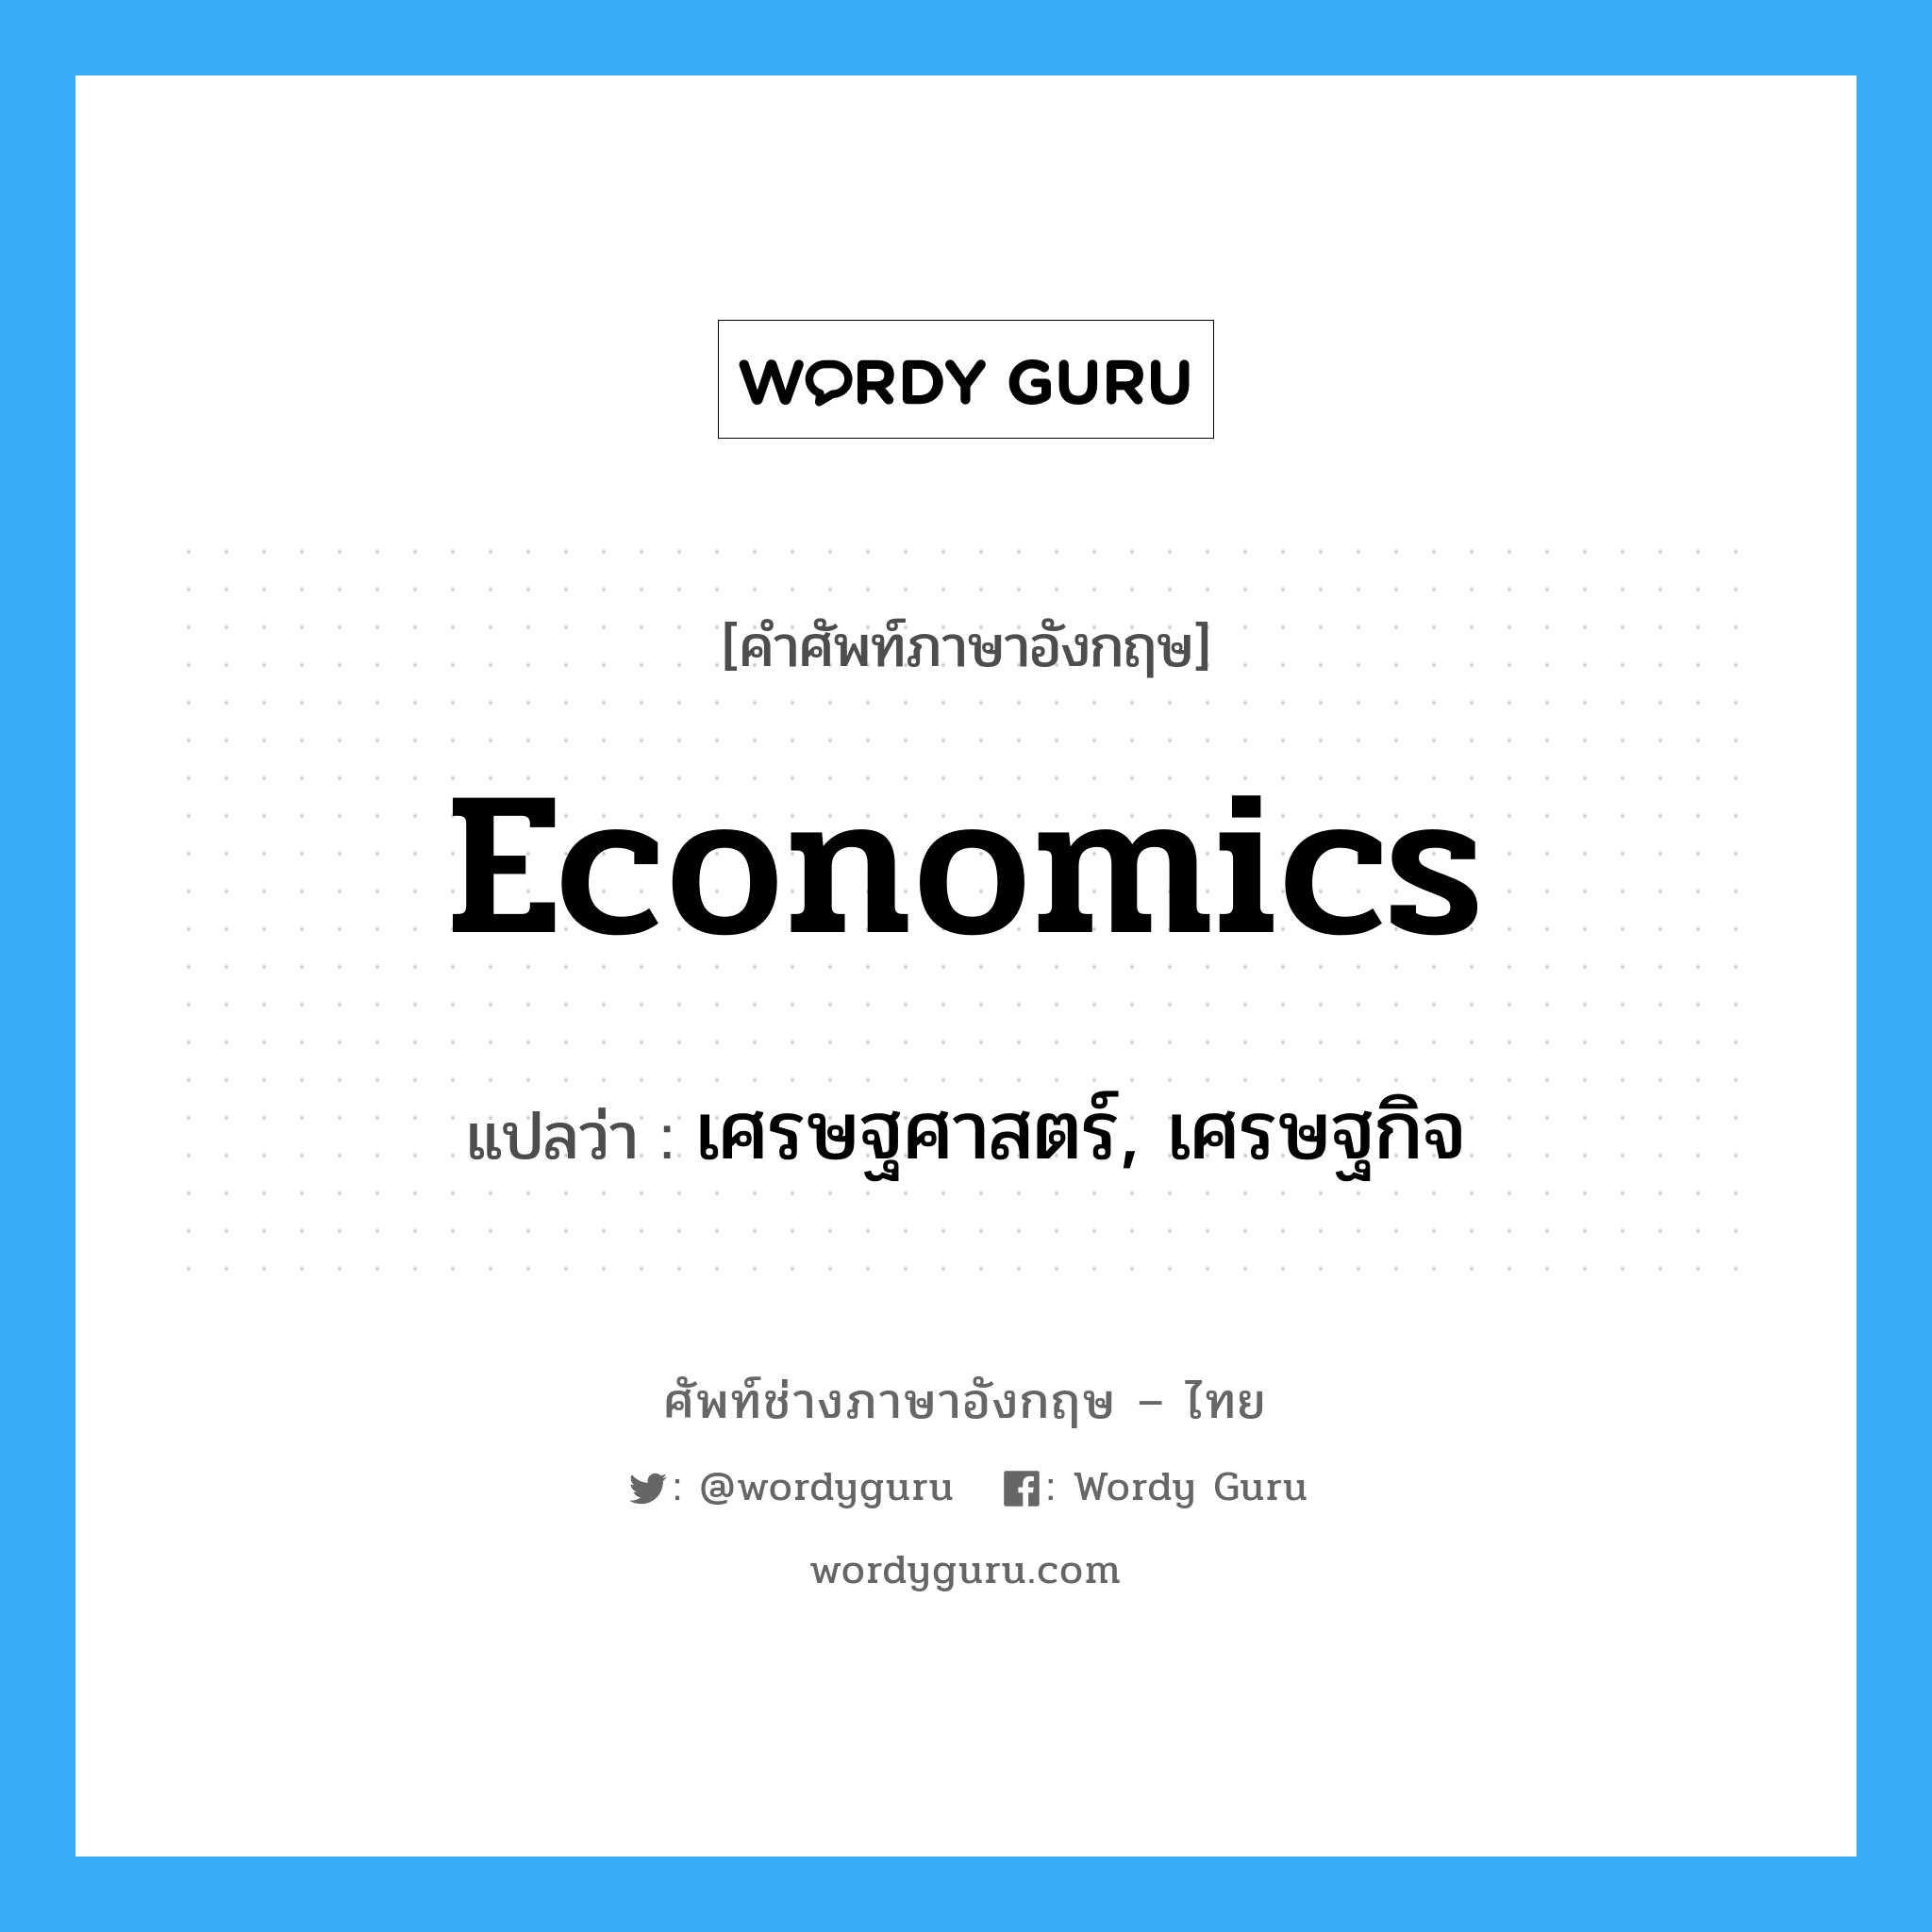 เศรษฐศาสตร์, เศรษฐกิจ ภาษาอังกฤษ?, คำศัพท์ช่างภาษาอังกฤษ - ไทย เศรษฐศาสตร์, เศรษฐกิจ คำศัพท์ภาษาอังกฤษ เศรษฐศาสตร์, เศรษฐกิจ แปลว่า economics